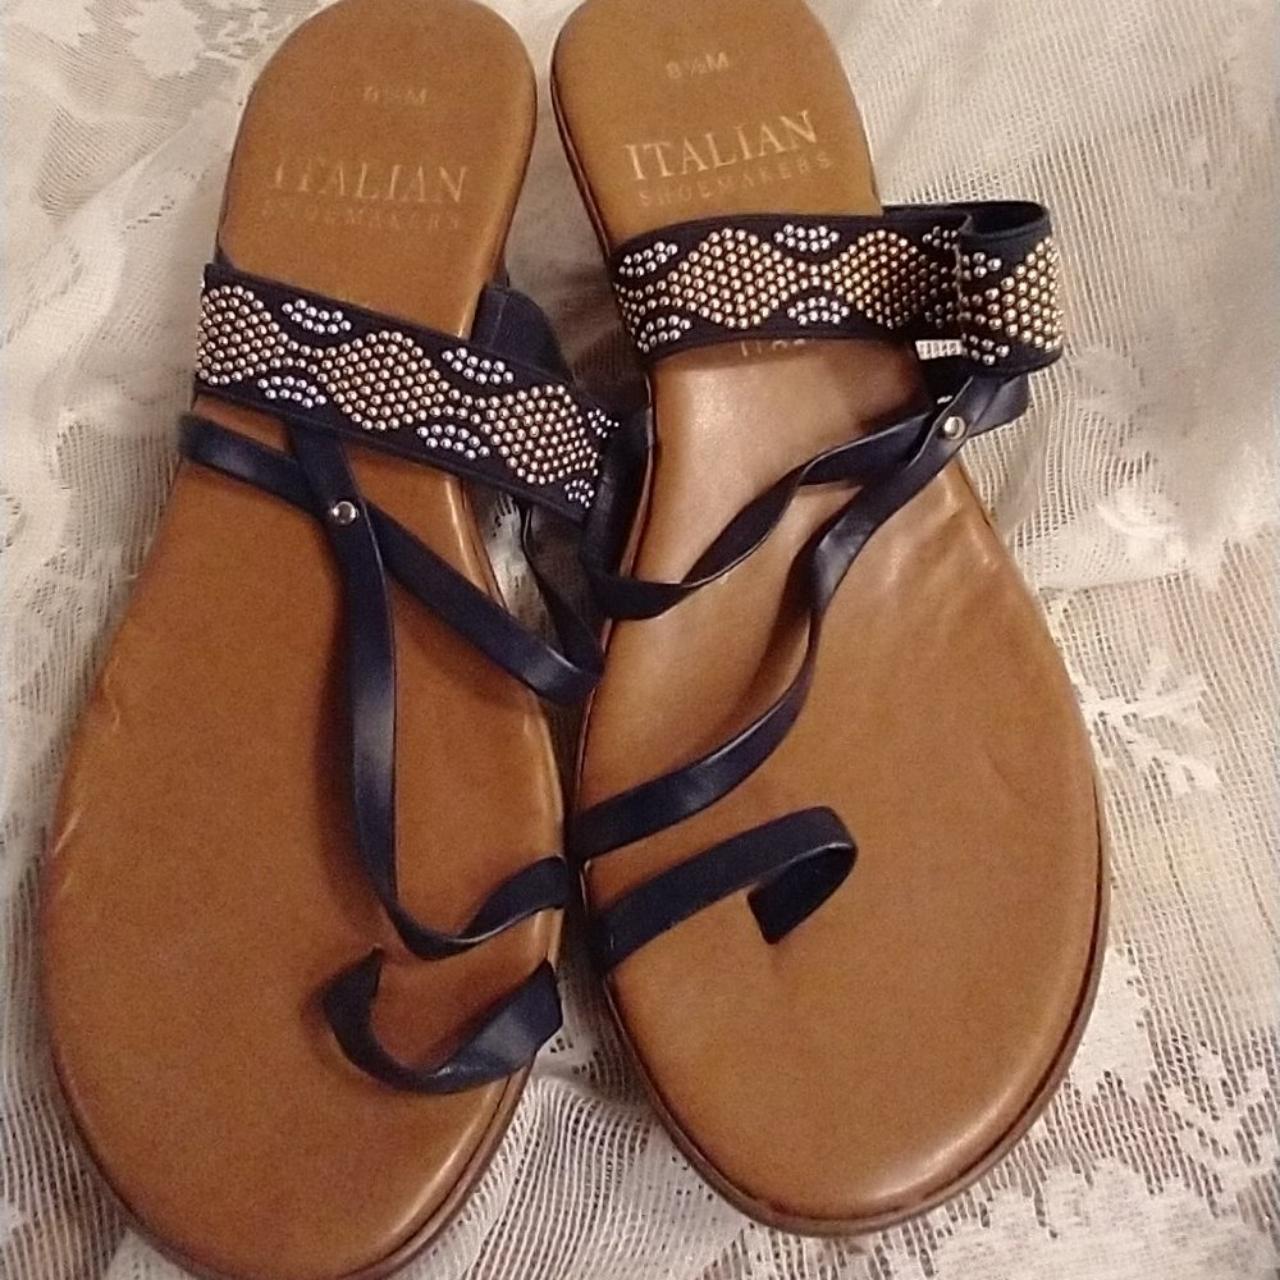 Handmade women's slipper sandals dark brown leather | The leather craftsmen